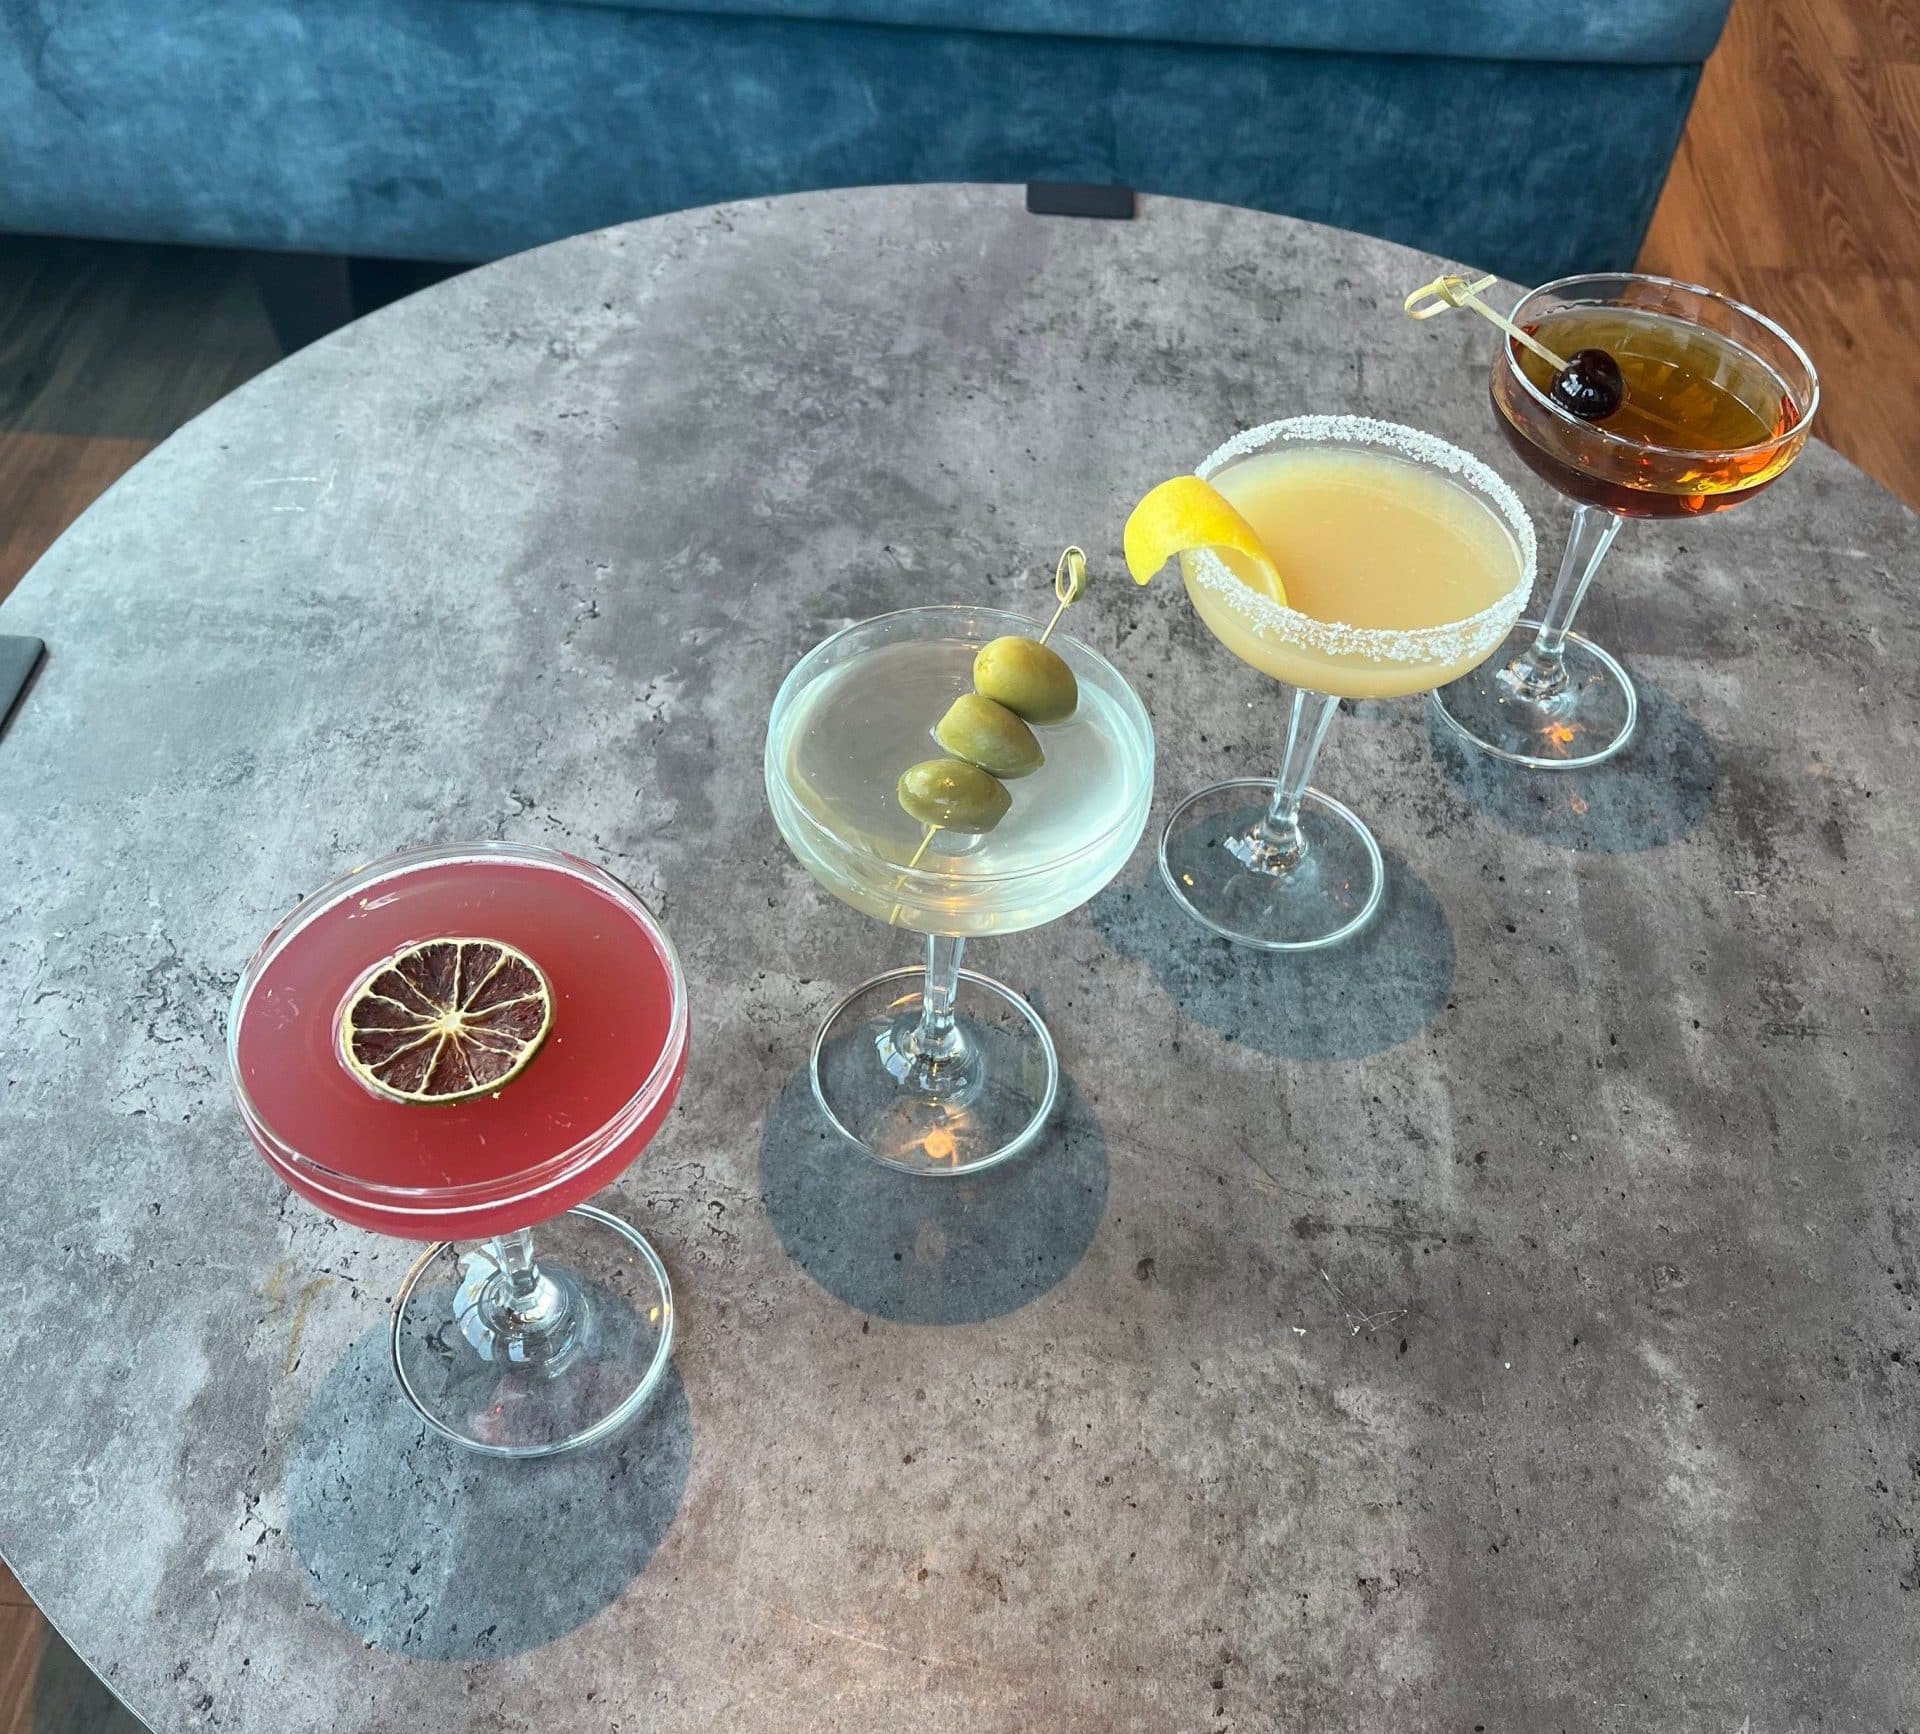 martini lineup of Cosmopolitan, Classic Martini, Lemon Drop and Manhattan